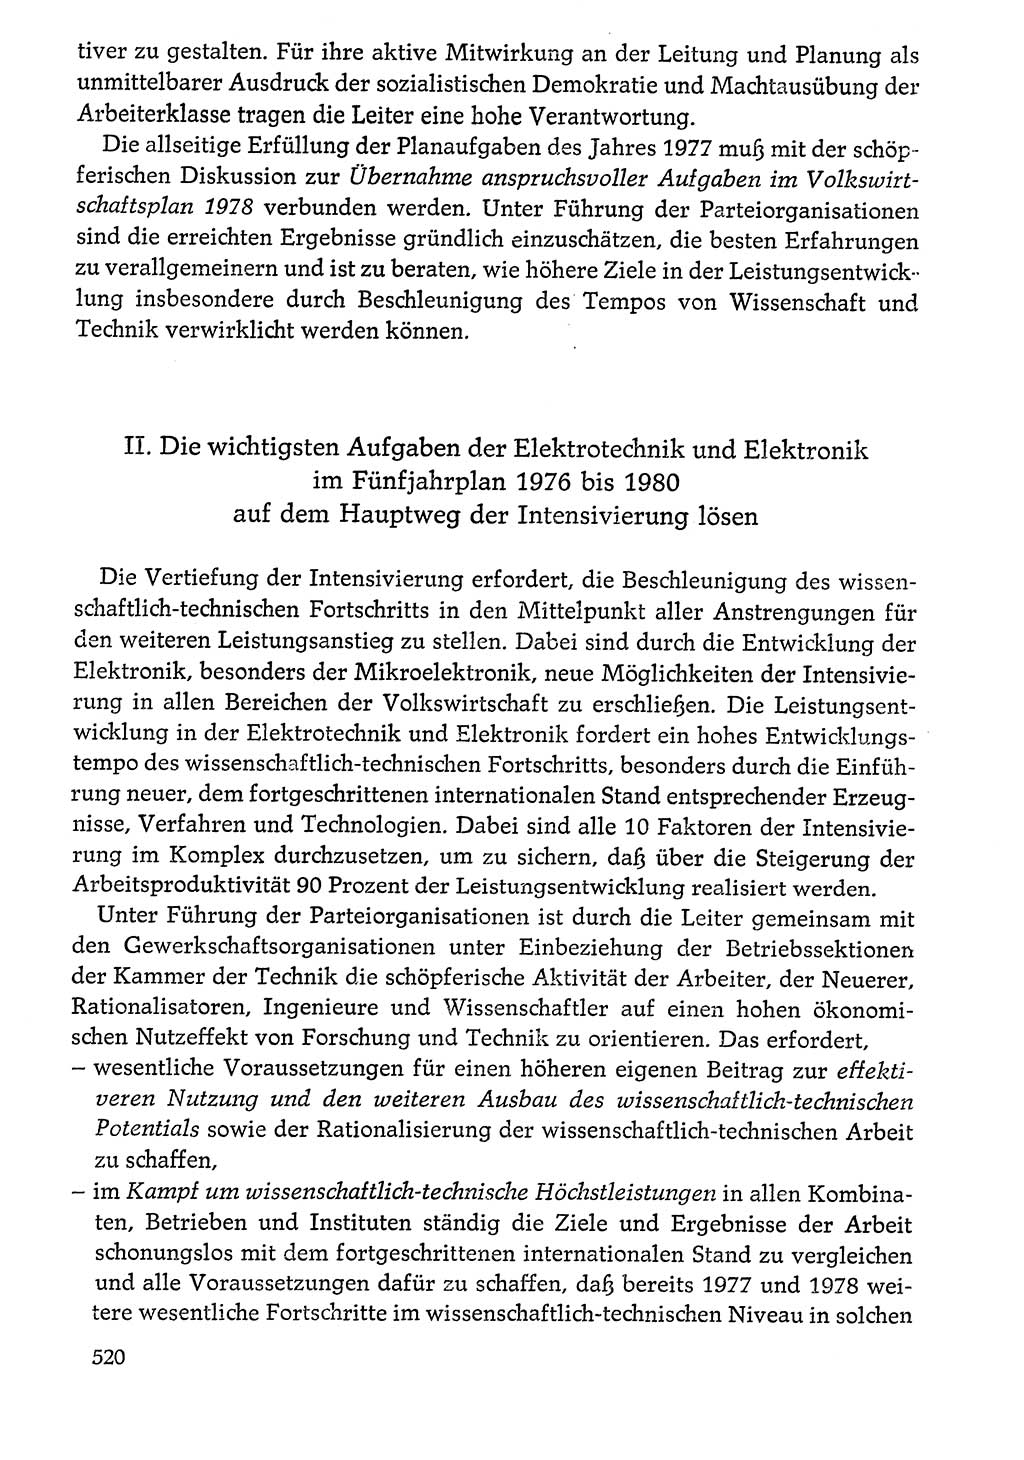 Dokumente der Sozialistischen Einheitspartei Deutschlands (SED) [Deutsche Demokratische Republik (DDR)] 1976-1977, Seite 520 (Dok. SED DDR 1976-1977, S. 520)